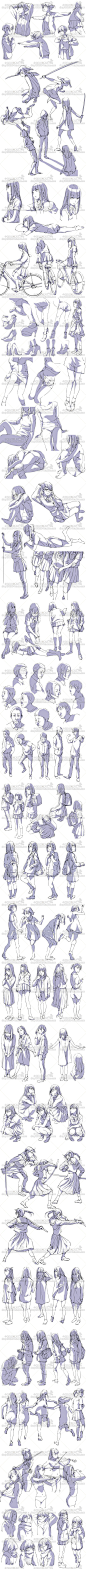 2070张手绘日式动漫人体动态线稿 动漫人物插画动画参考图片素材-淘宝网